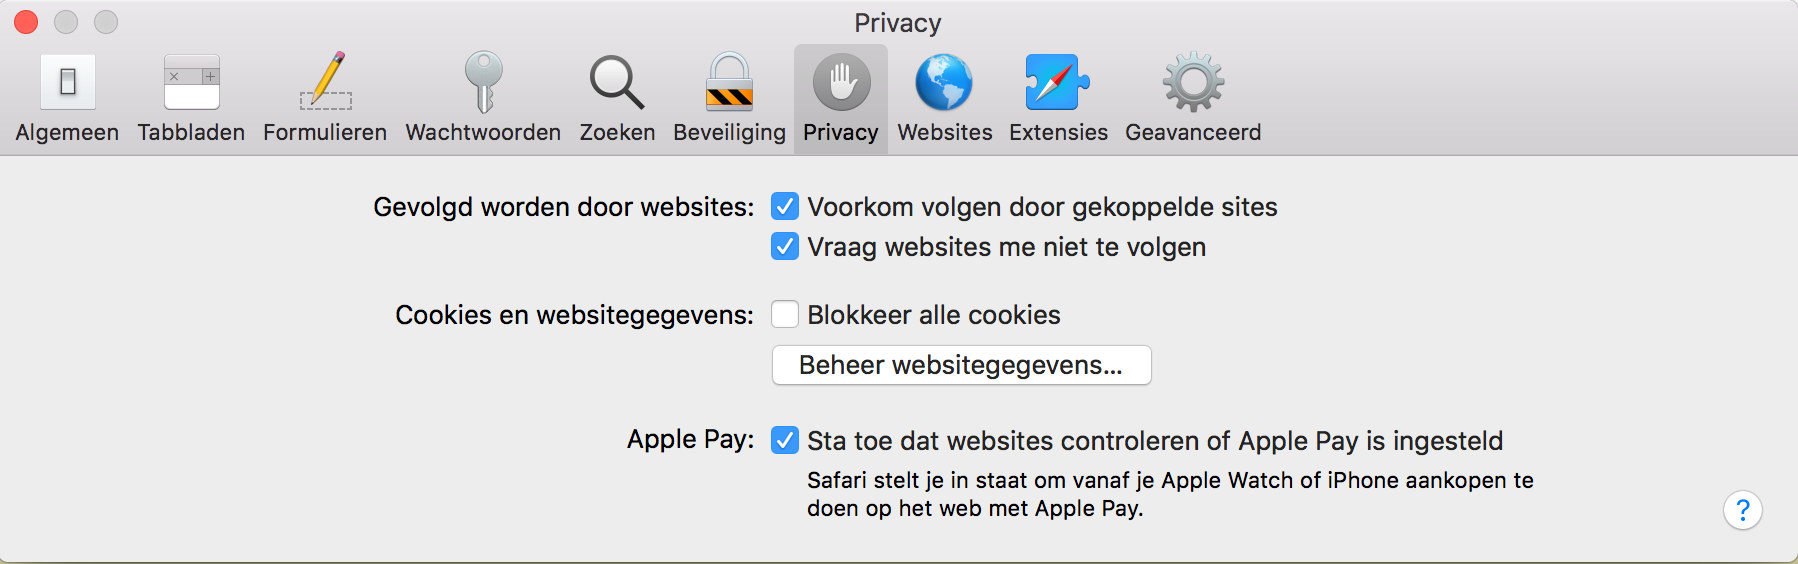 Schermafbeelding tabblad Privacy in Safari